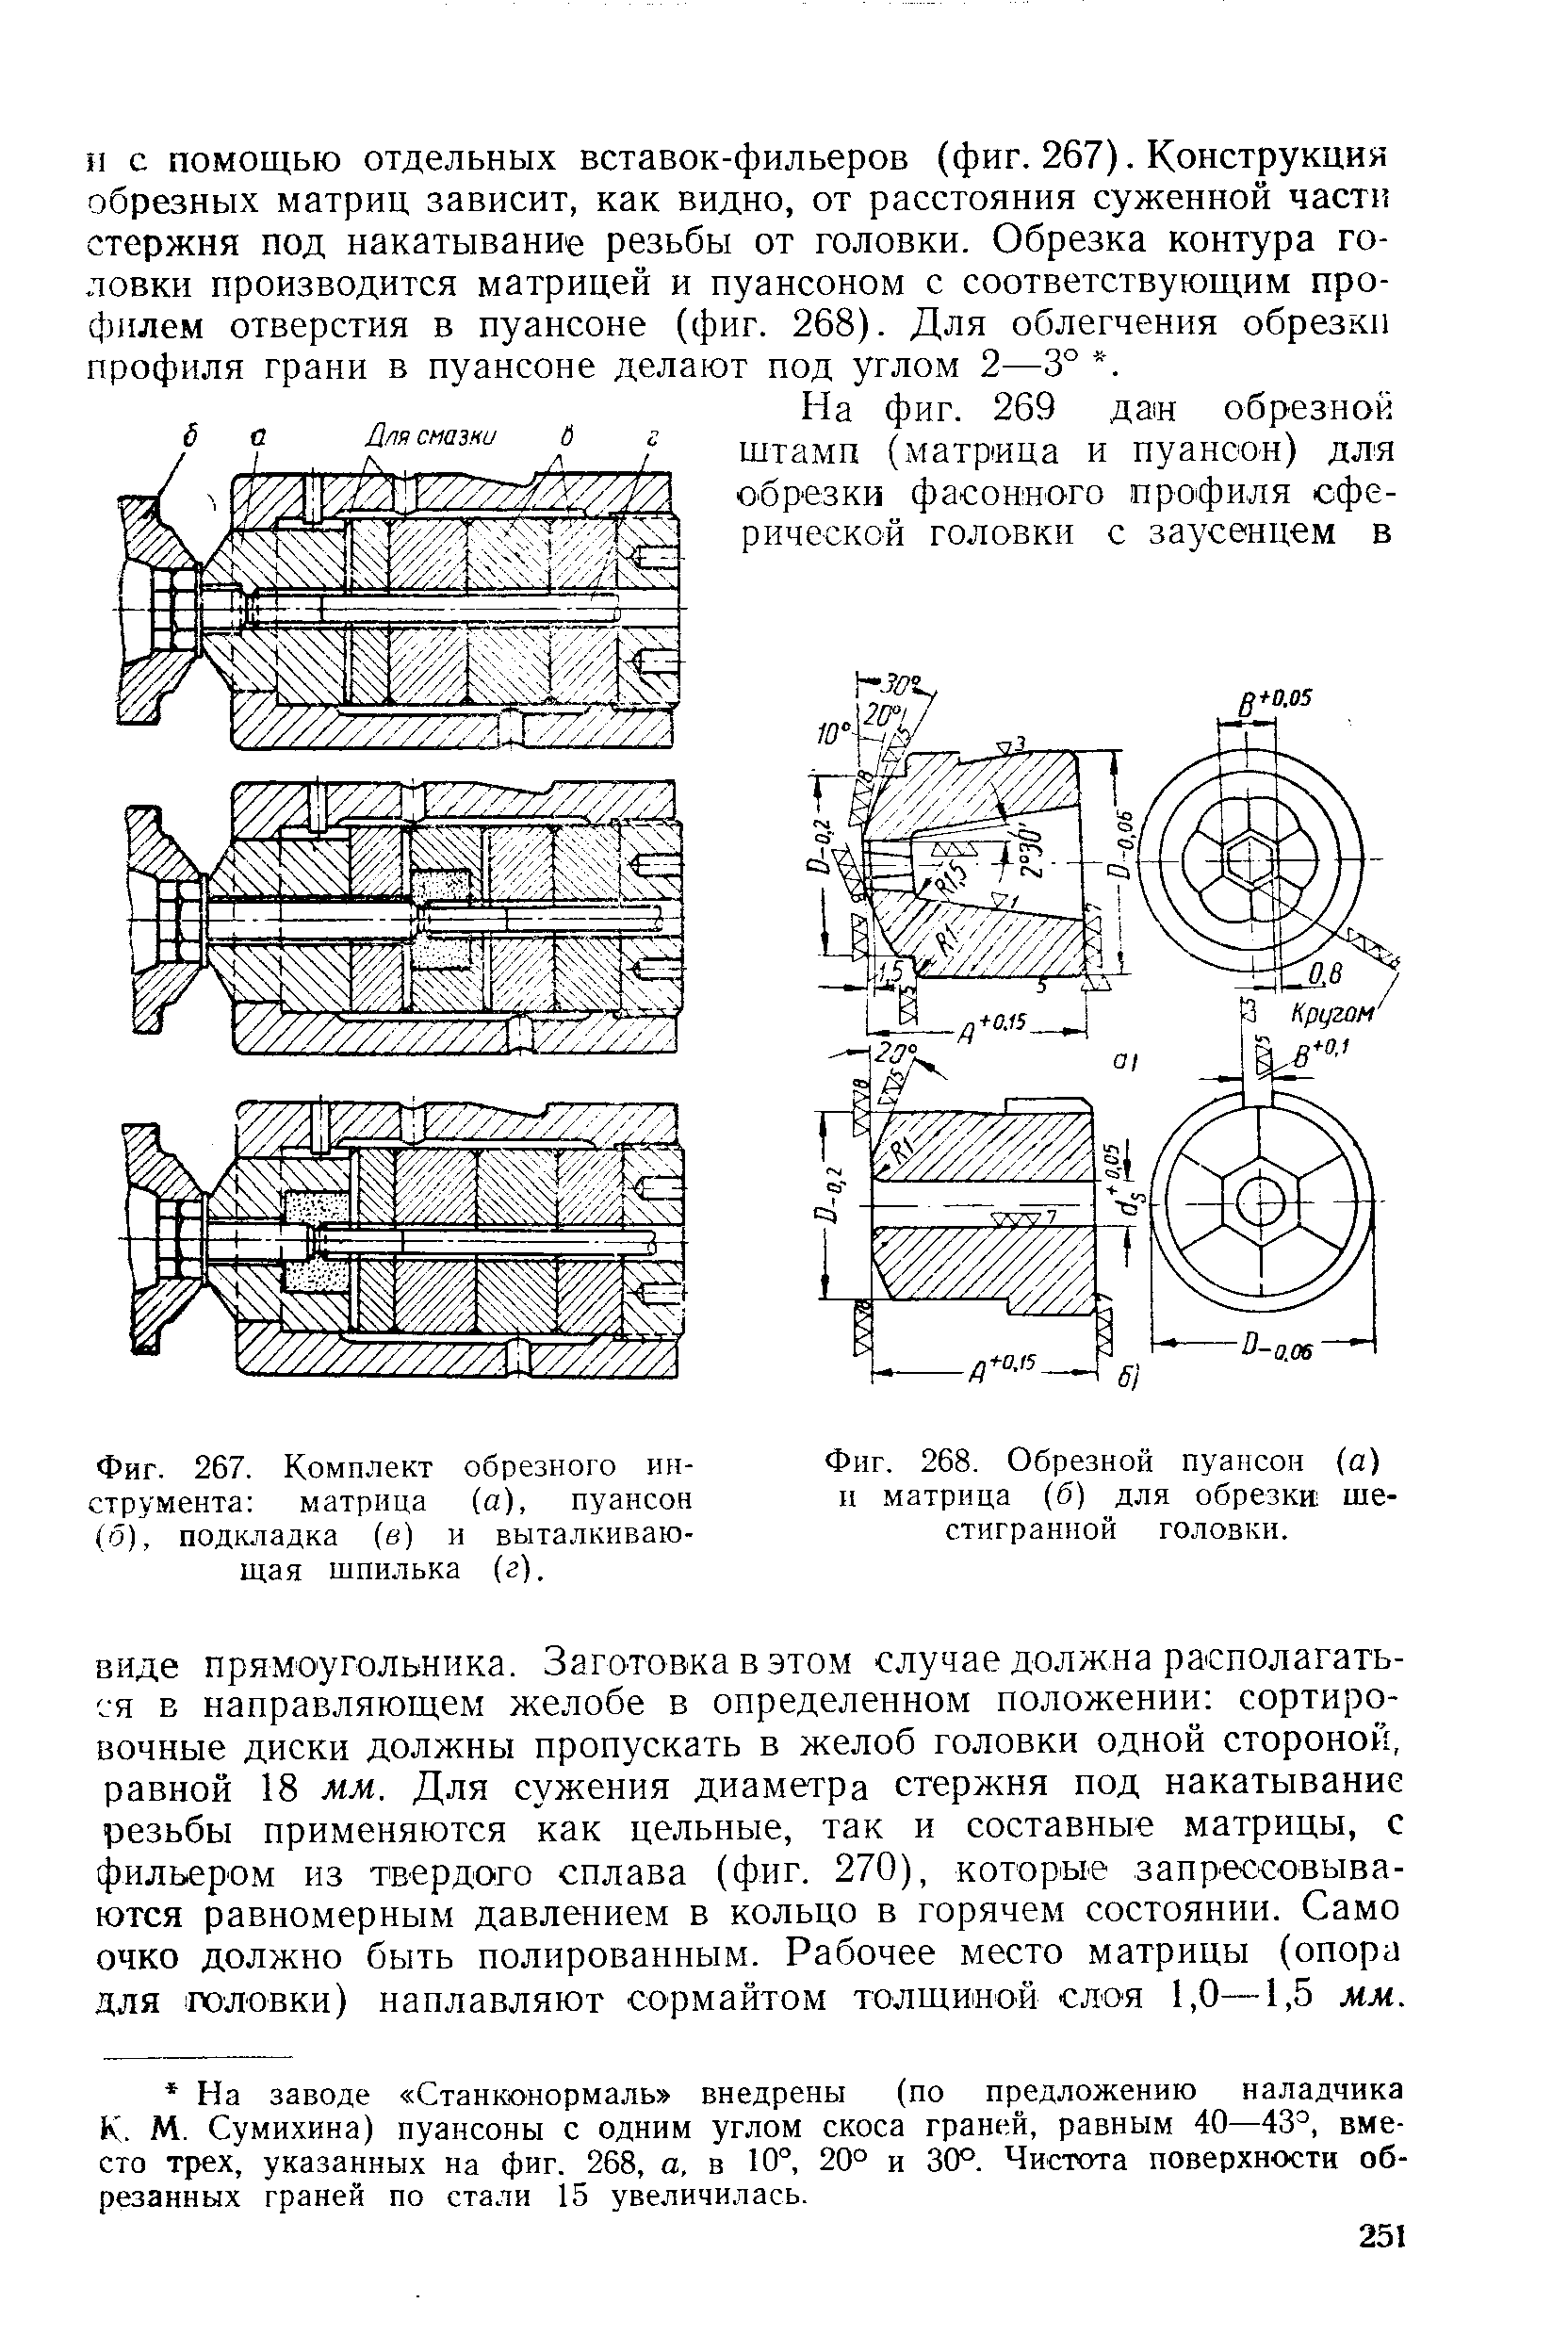 Фиг. 268. Обрезной пуансон (а) и матрица (б) для обрезки шестигранной головки.
